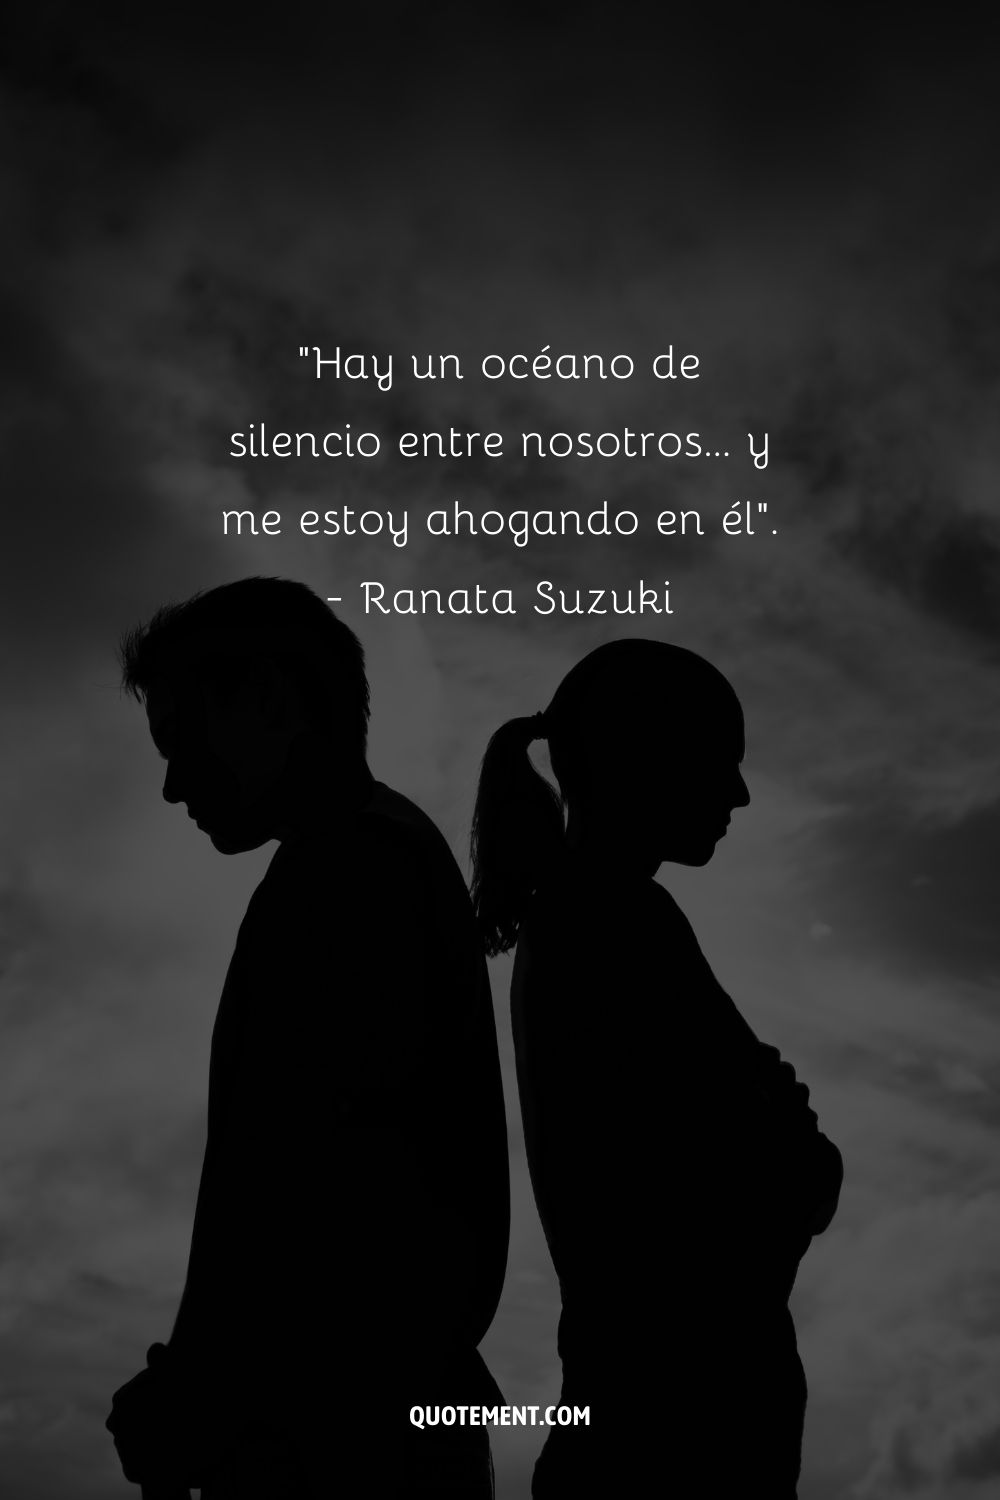 "Hay un océano de silencio entre nosotros... y me estoy ahogando en él". - Ranata Suzuki